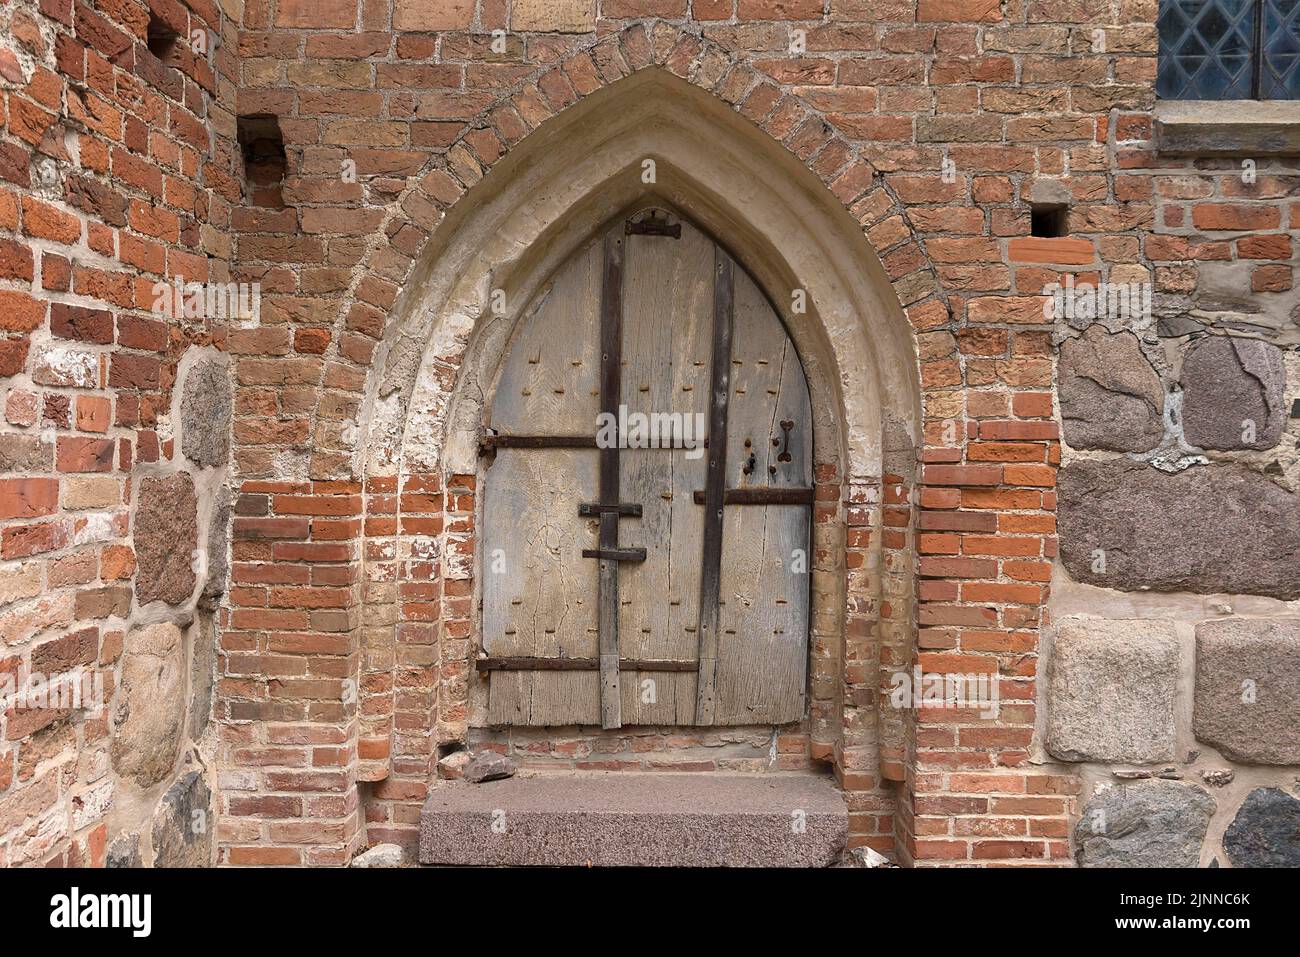 Entrée latérale de l'église du village gothique, 13th siècle Kirch Grambow, Mecklembourg-Poméranie occidentale, Allemagne Banque D'Images